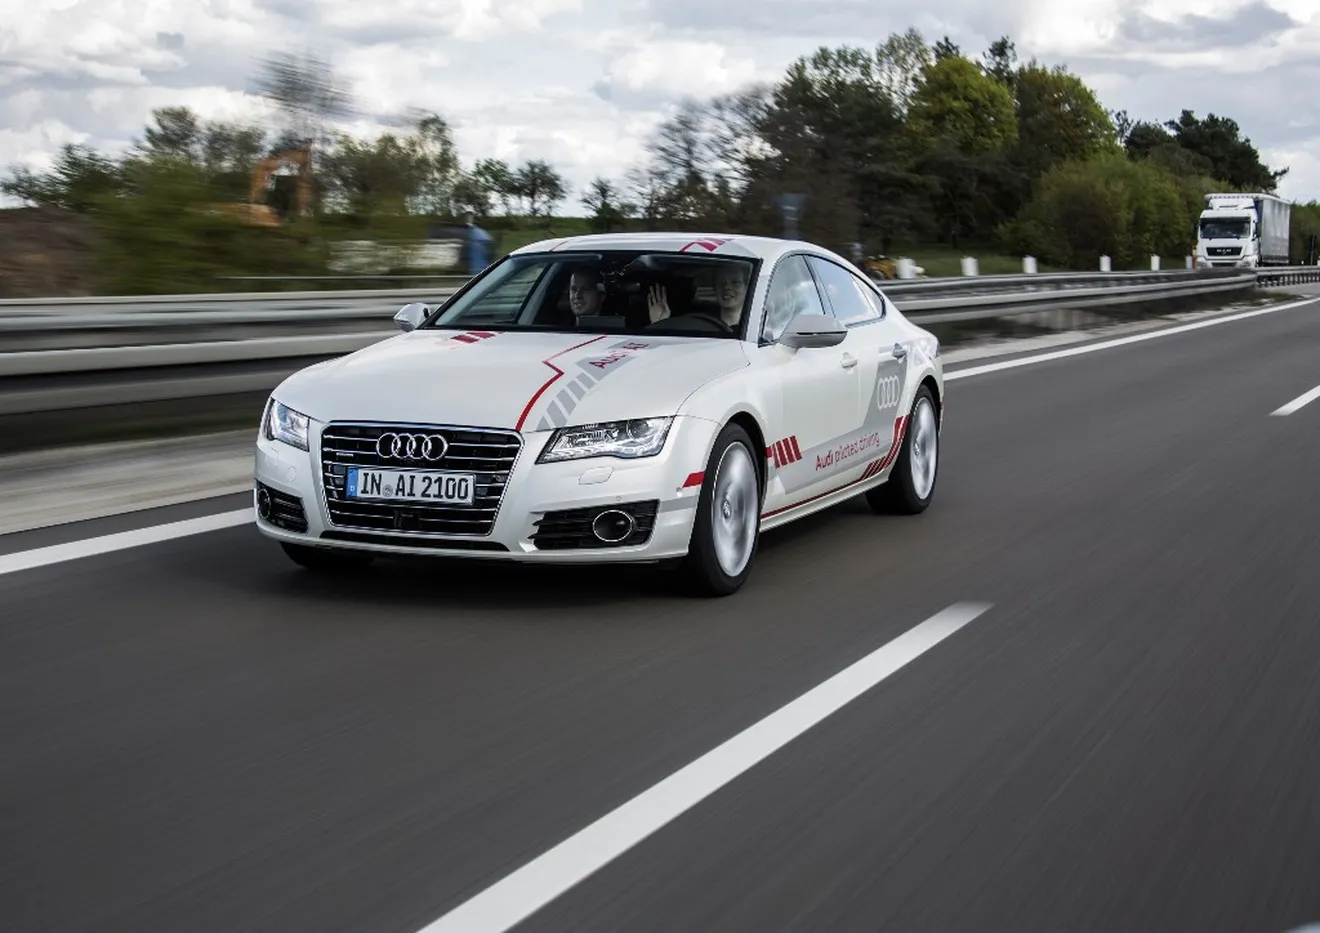 Los clientes de Audi experimentan la conducción autónoma en primera persona